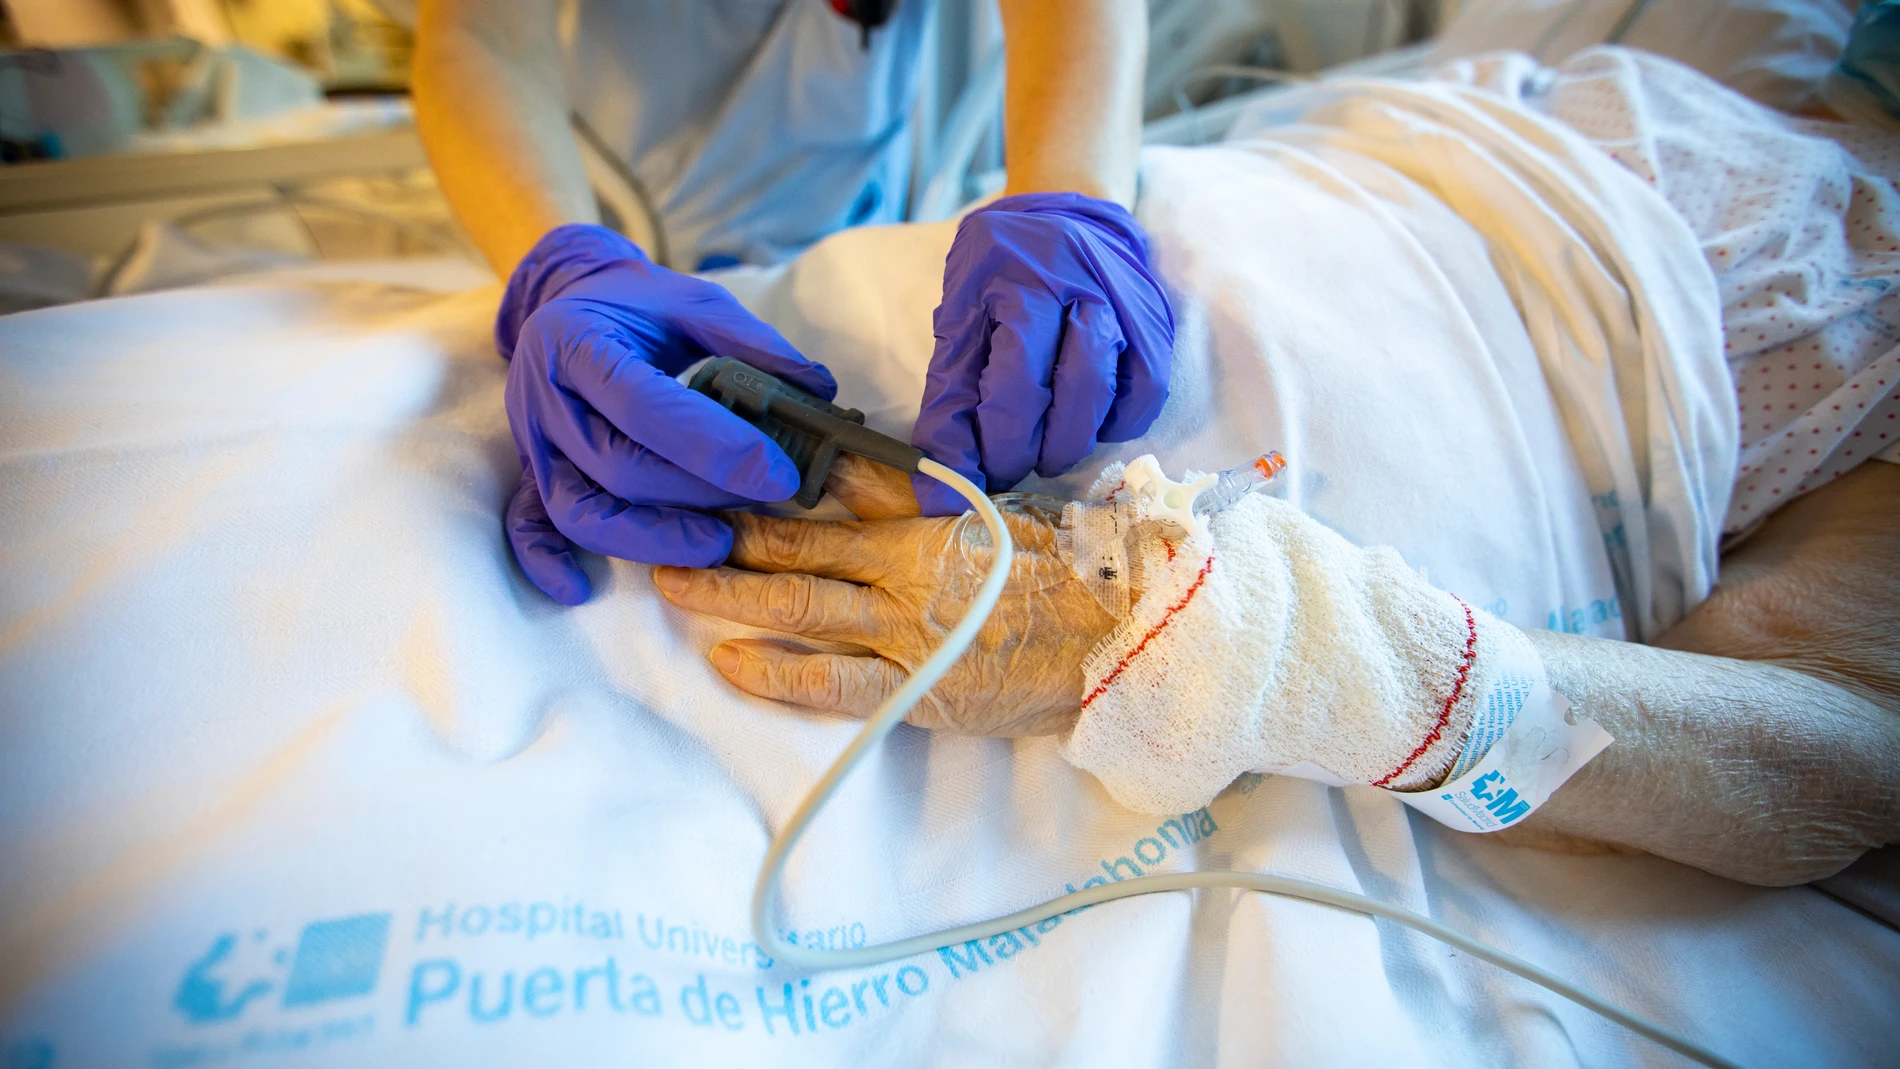 Imagen de la atención sanitaria en el hospital Puerta de Hierro de Madrid